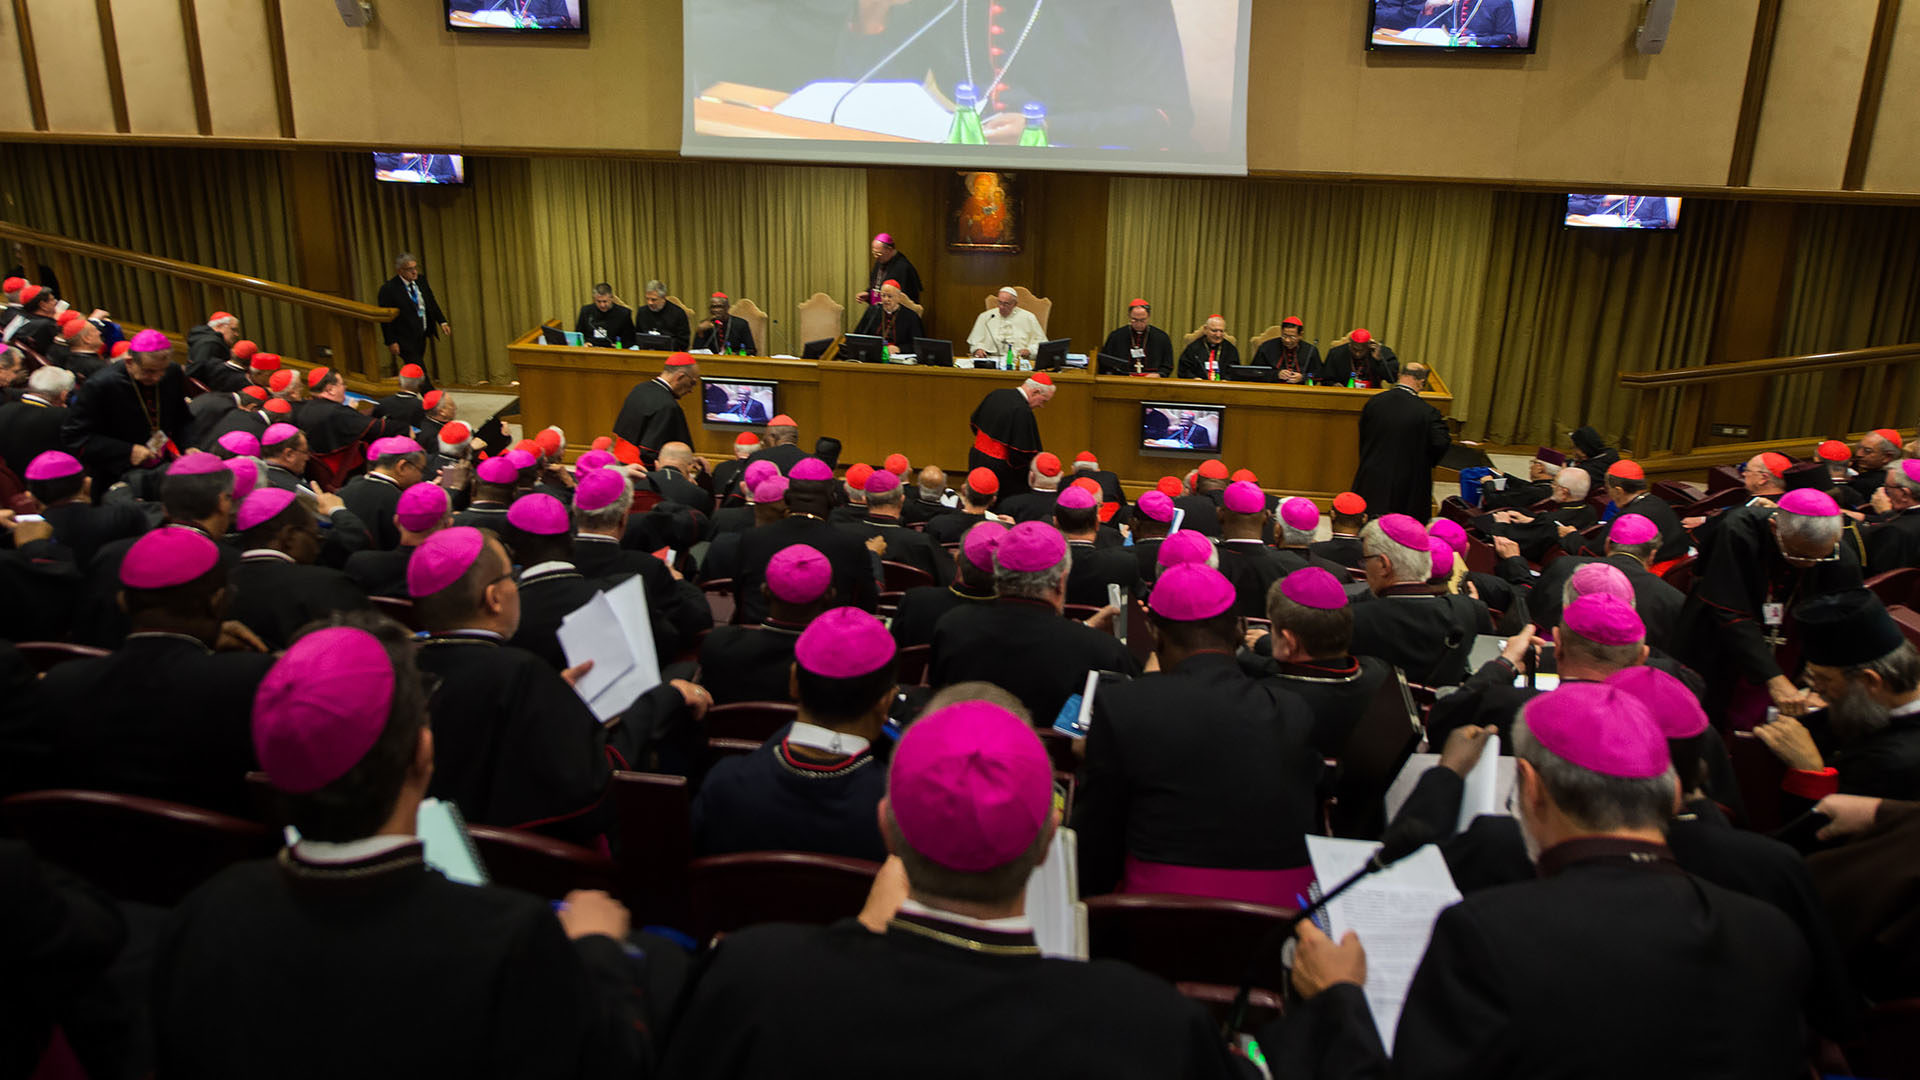 L'assemblée synodale a écouté une présentation du document final. | © Flickr/Mazur/catholicnews.org.uk/CC BY-NC-SA 2.0